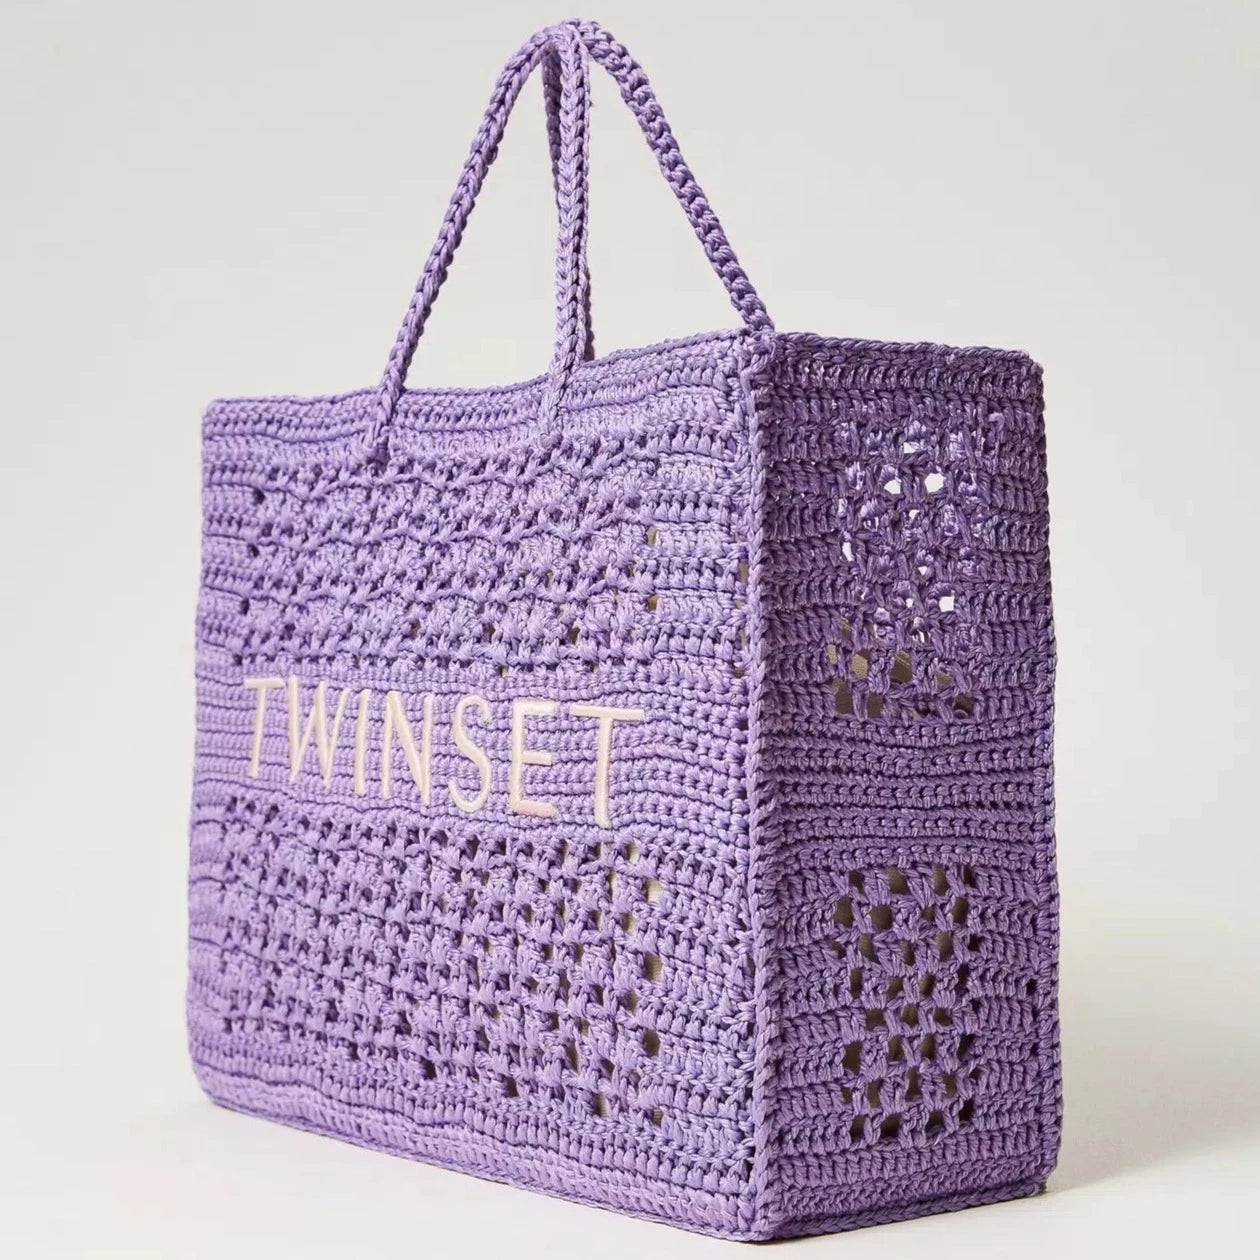 Borsa Twinset shopper 'Bohémien' crochet